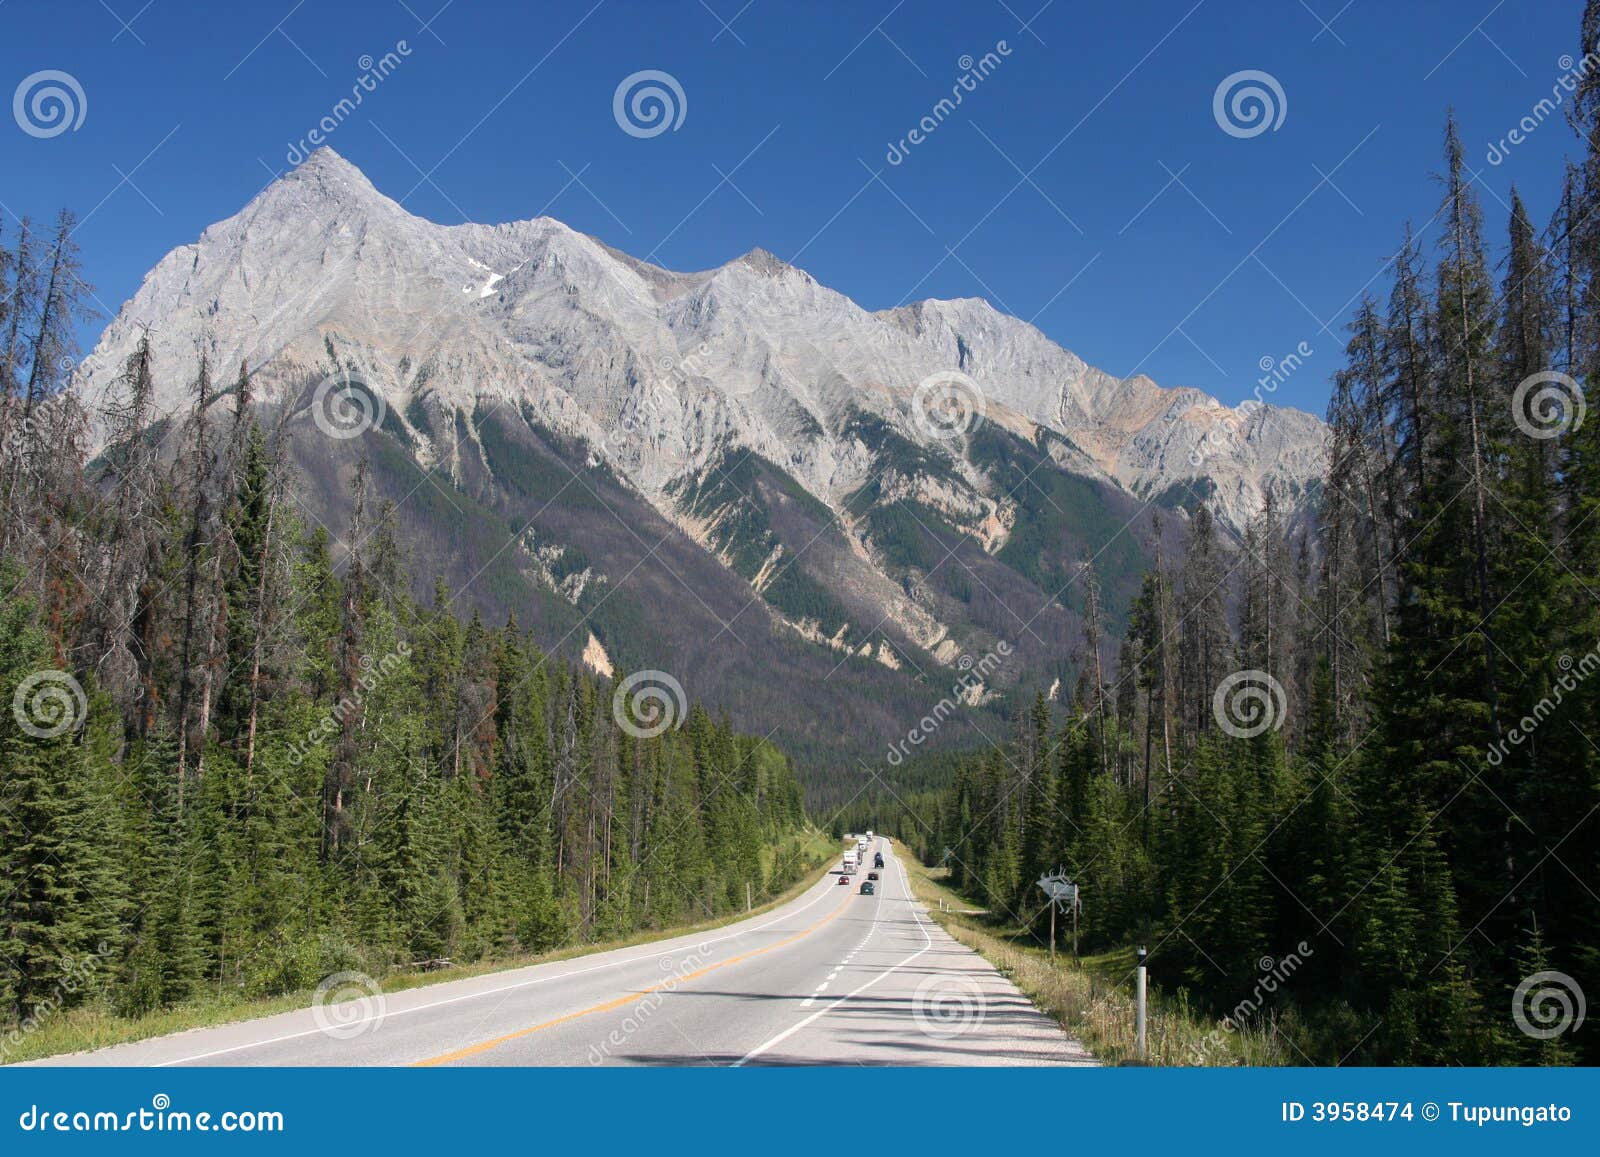 Parku narodowego yoho. Canada Columbia brytyjskiego krajobrazu gór parku narodowego w prosty yoho rocky sceniczny